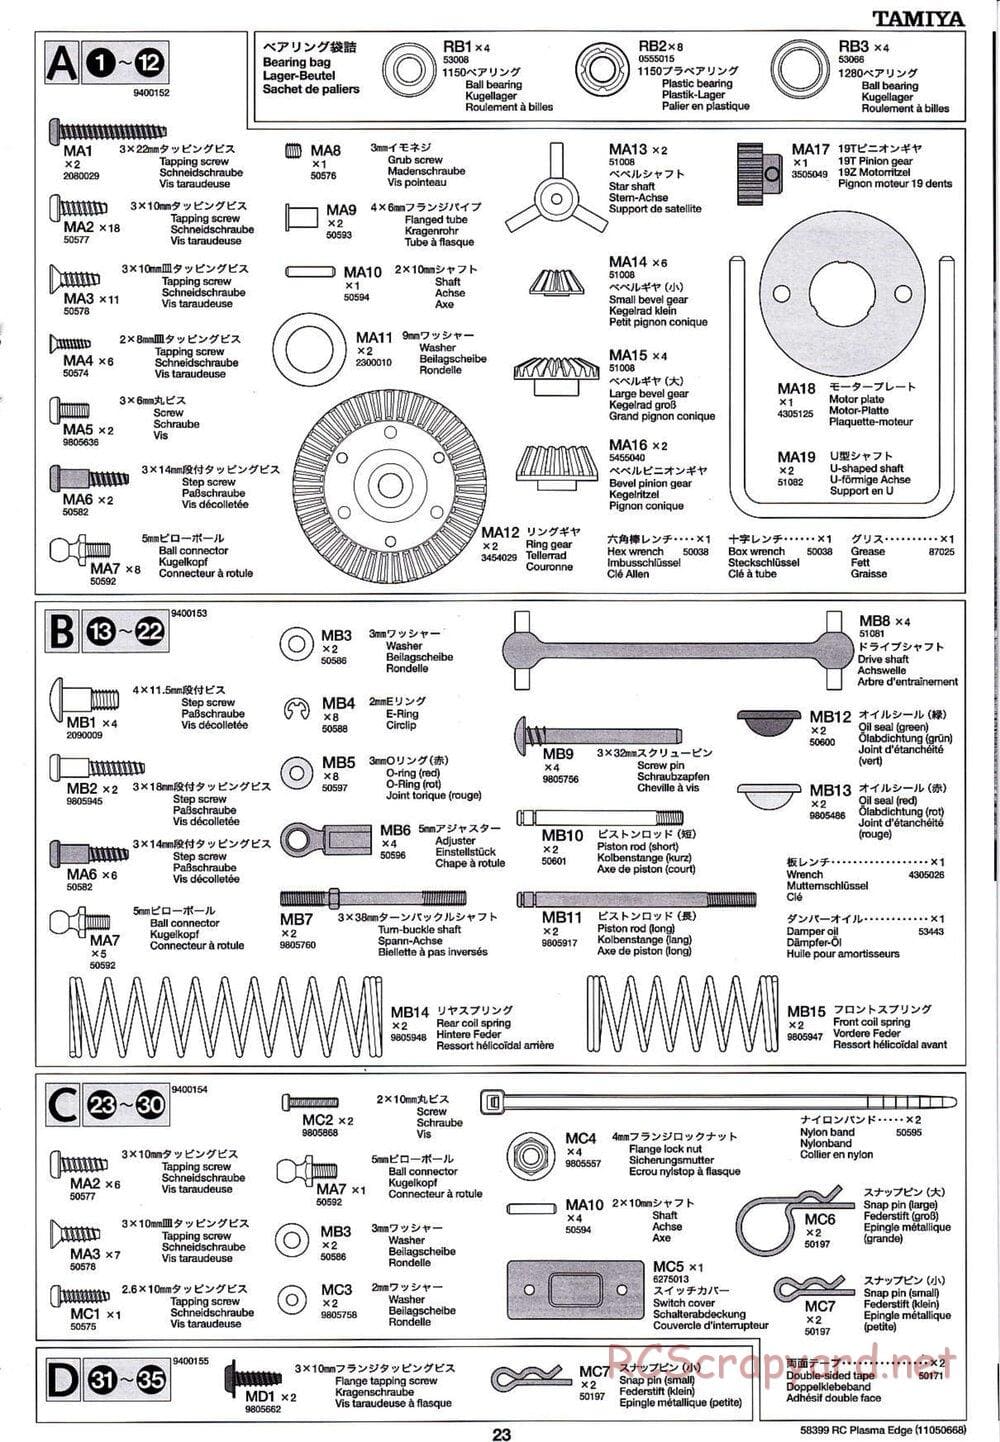 Tamiya - Plasma Edge Chassis - Manual - Page 23